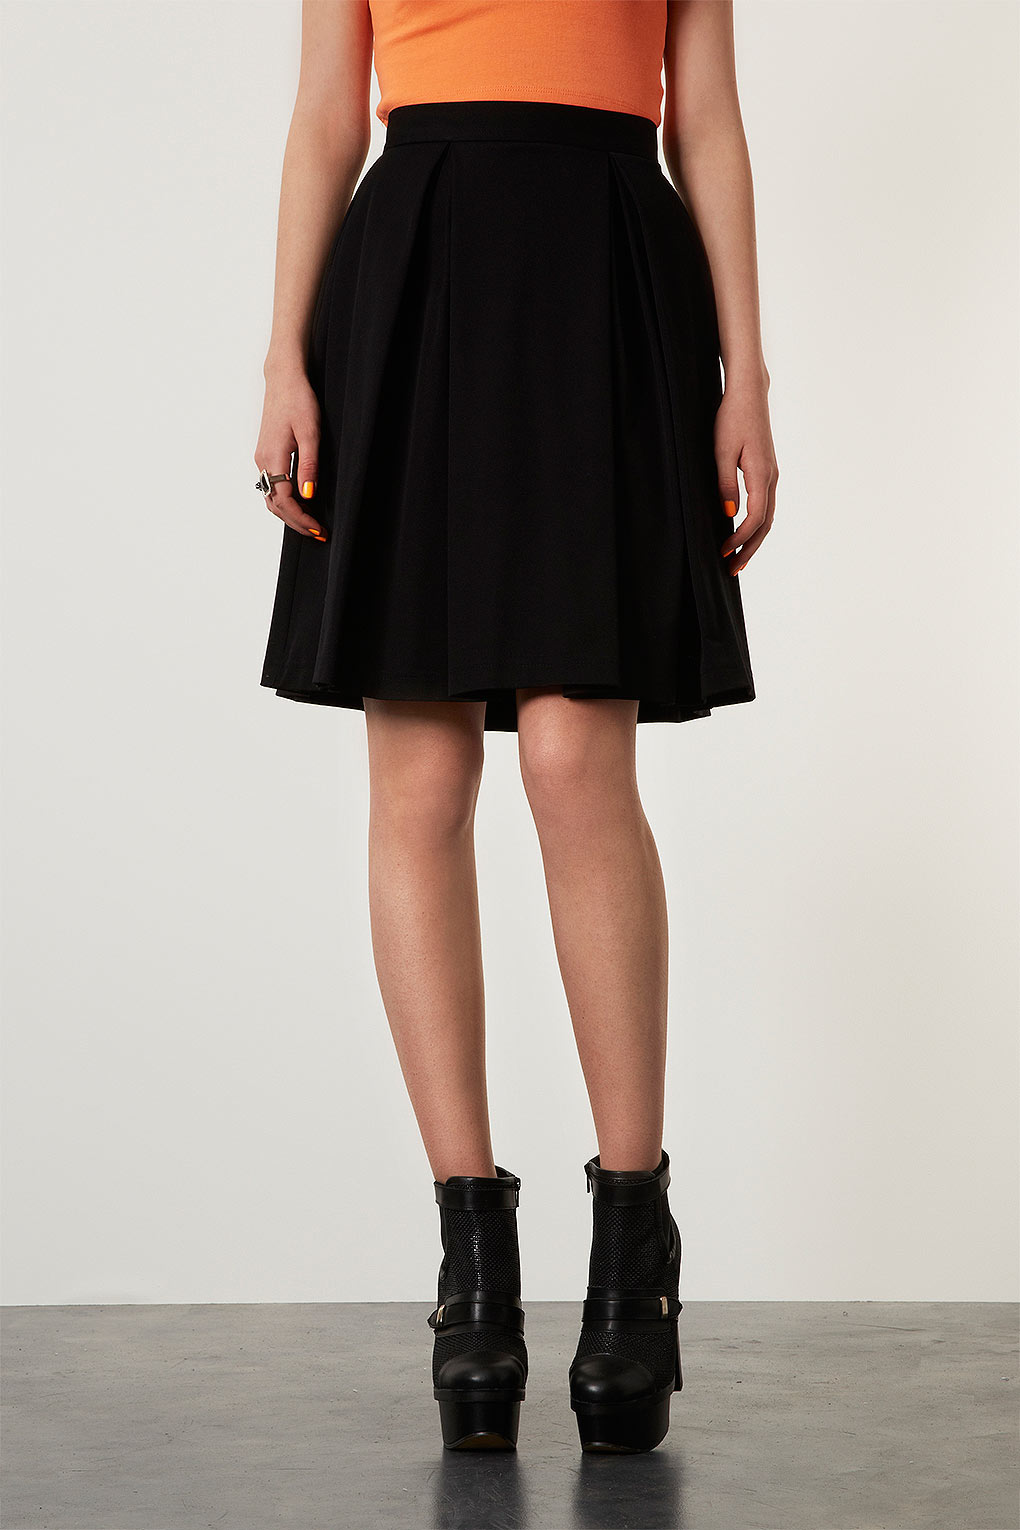 black knee skirt